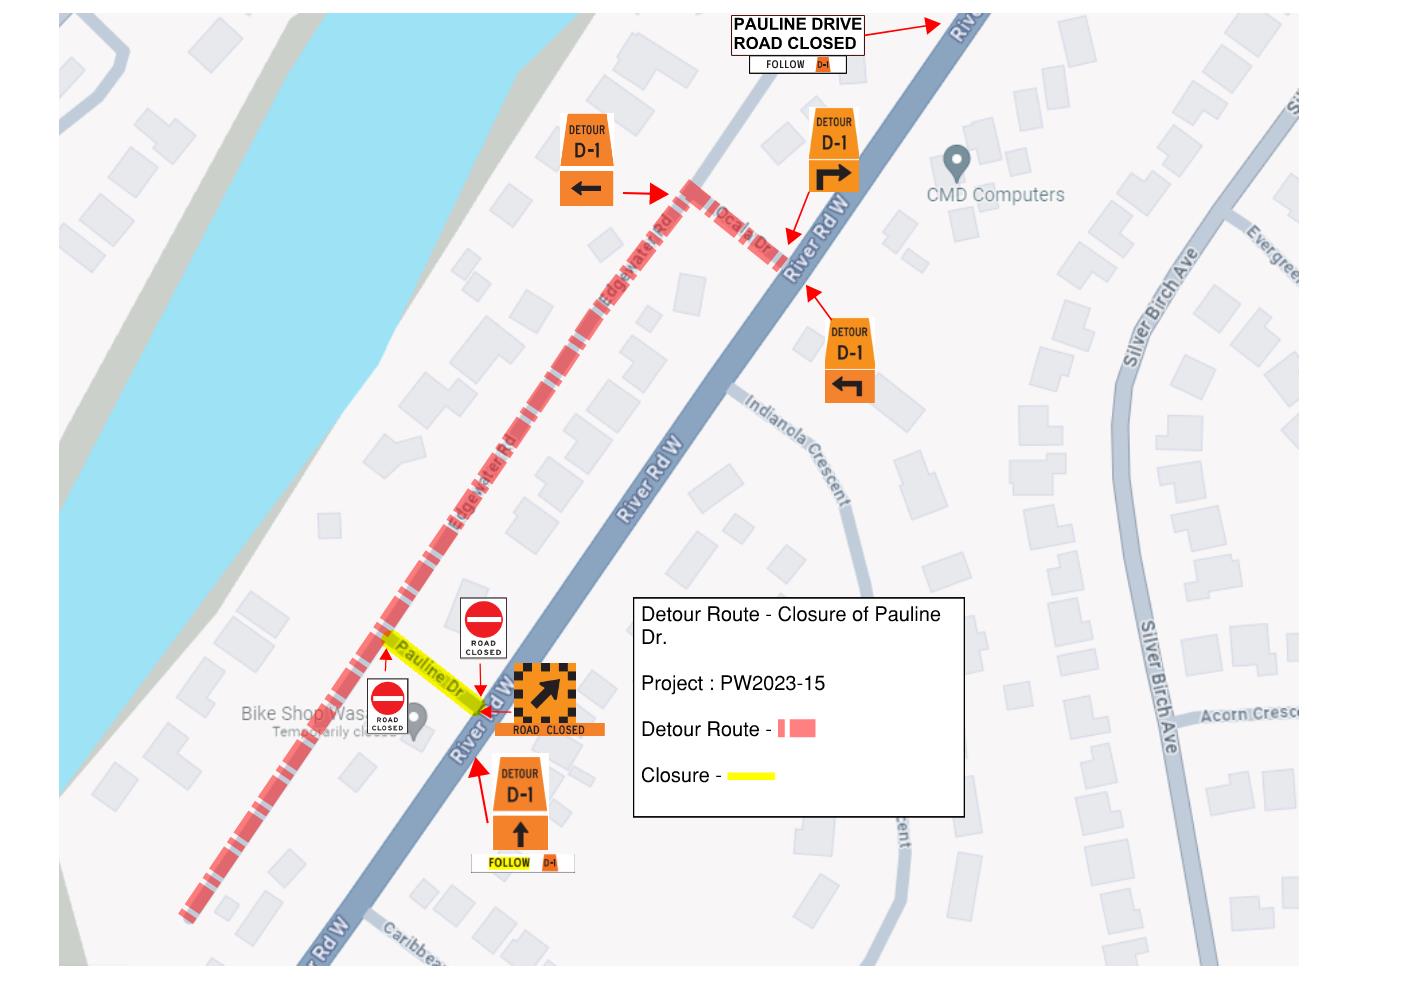 Pauline Drive - Road Closure - Detour Map image